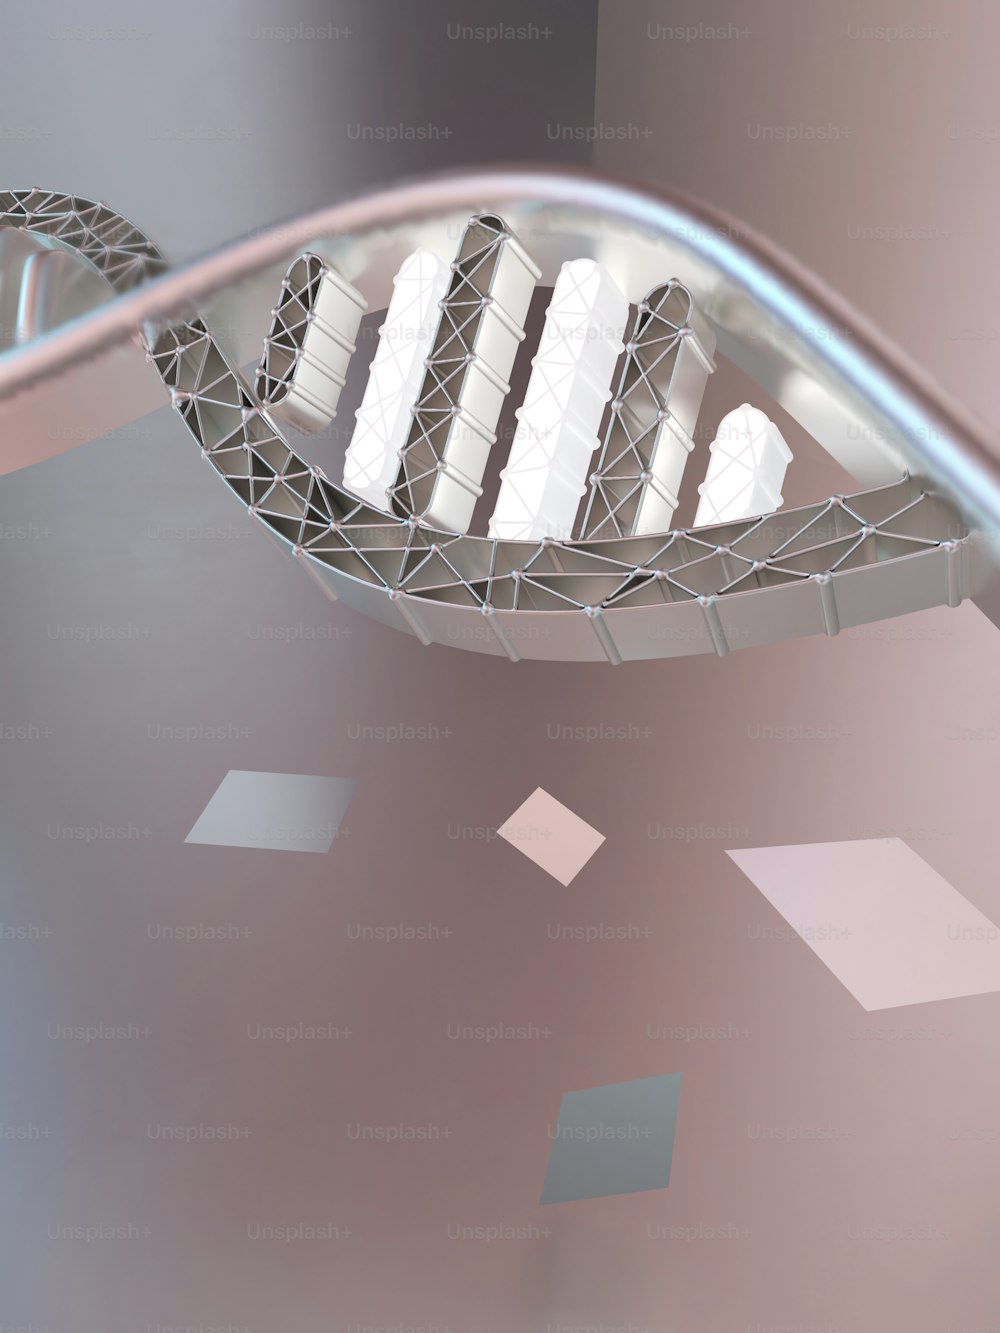 Une image 3D d’une structure avec un design en spirale